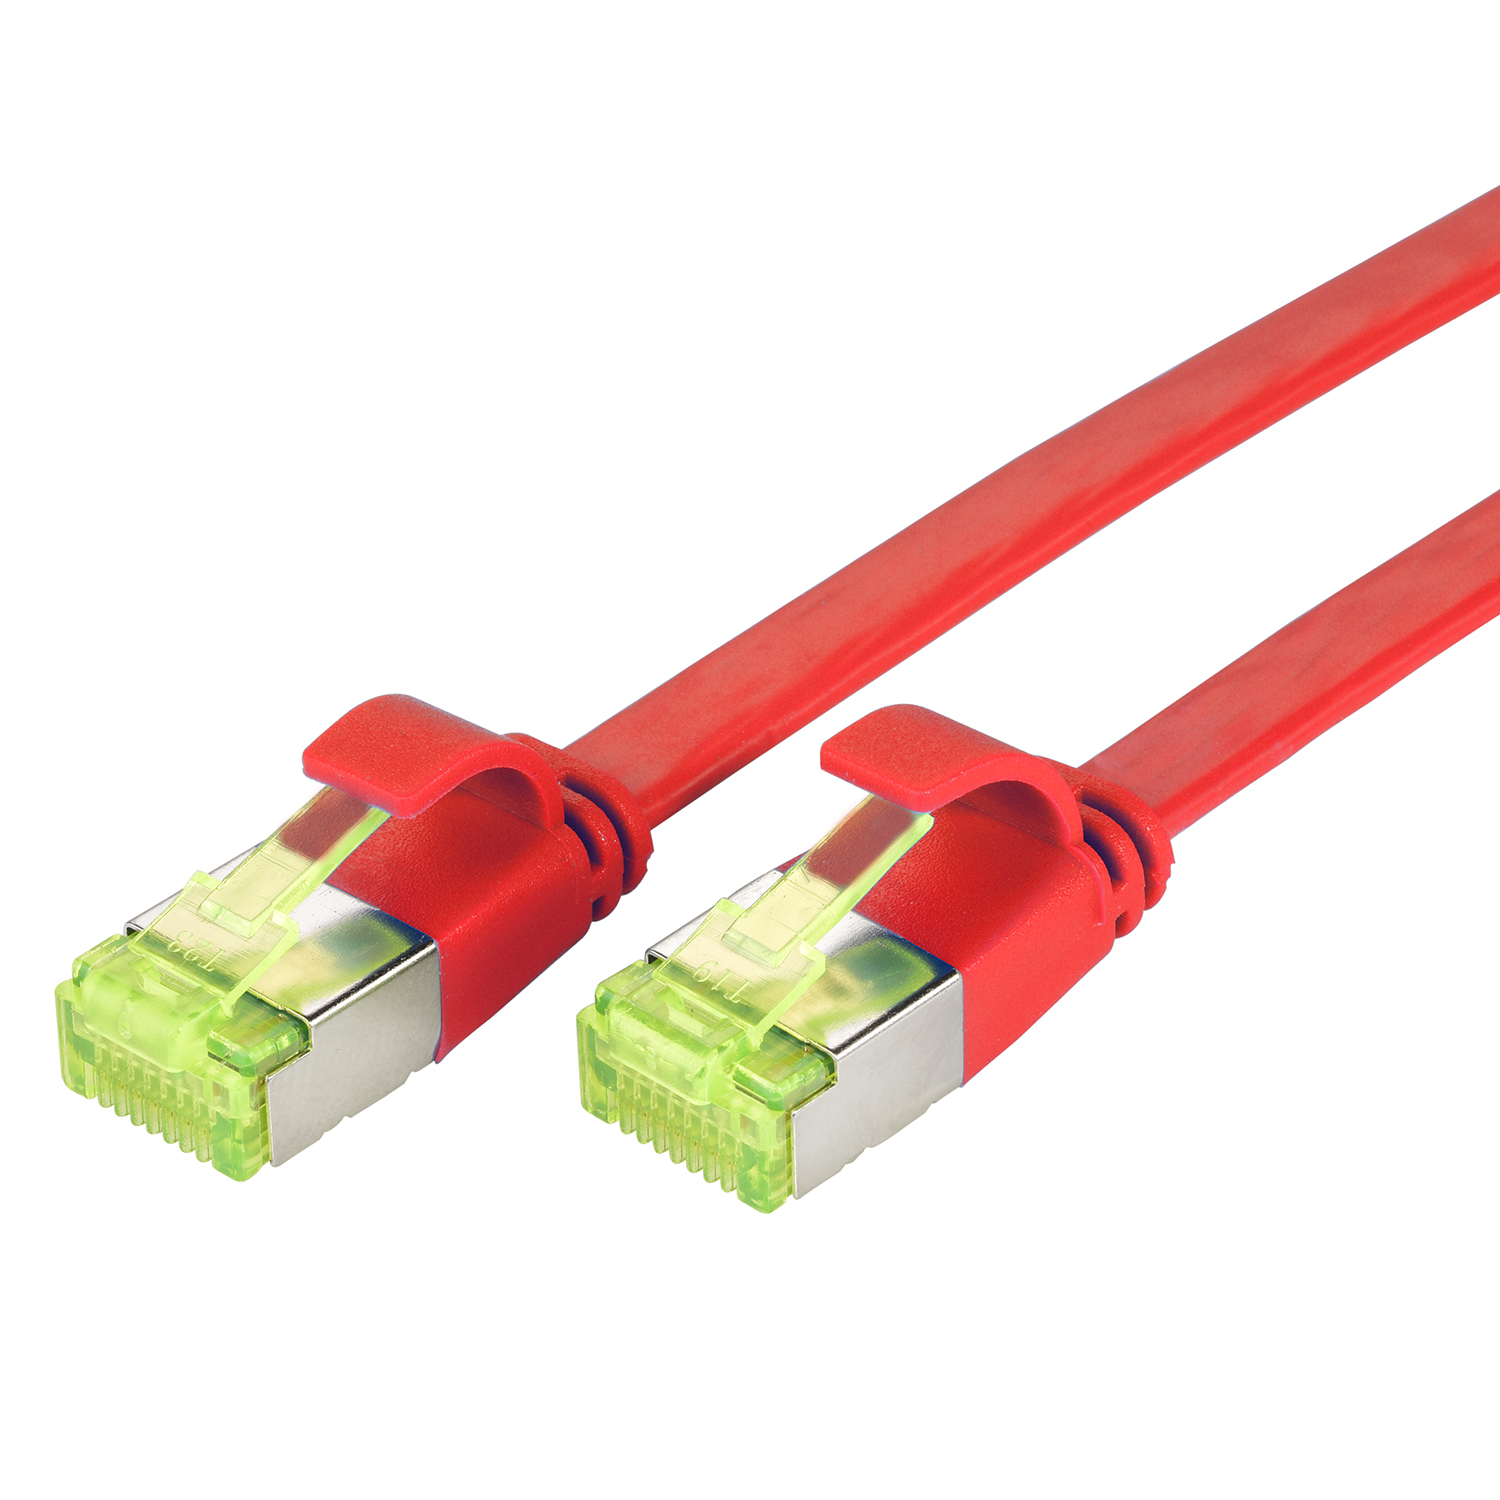 TPFNET 50m Patchkabel rot, m Netzwerkkabel, GBit, U/FTP 50 / 10 Flachkabel